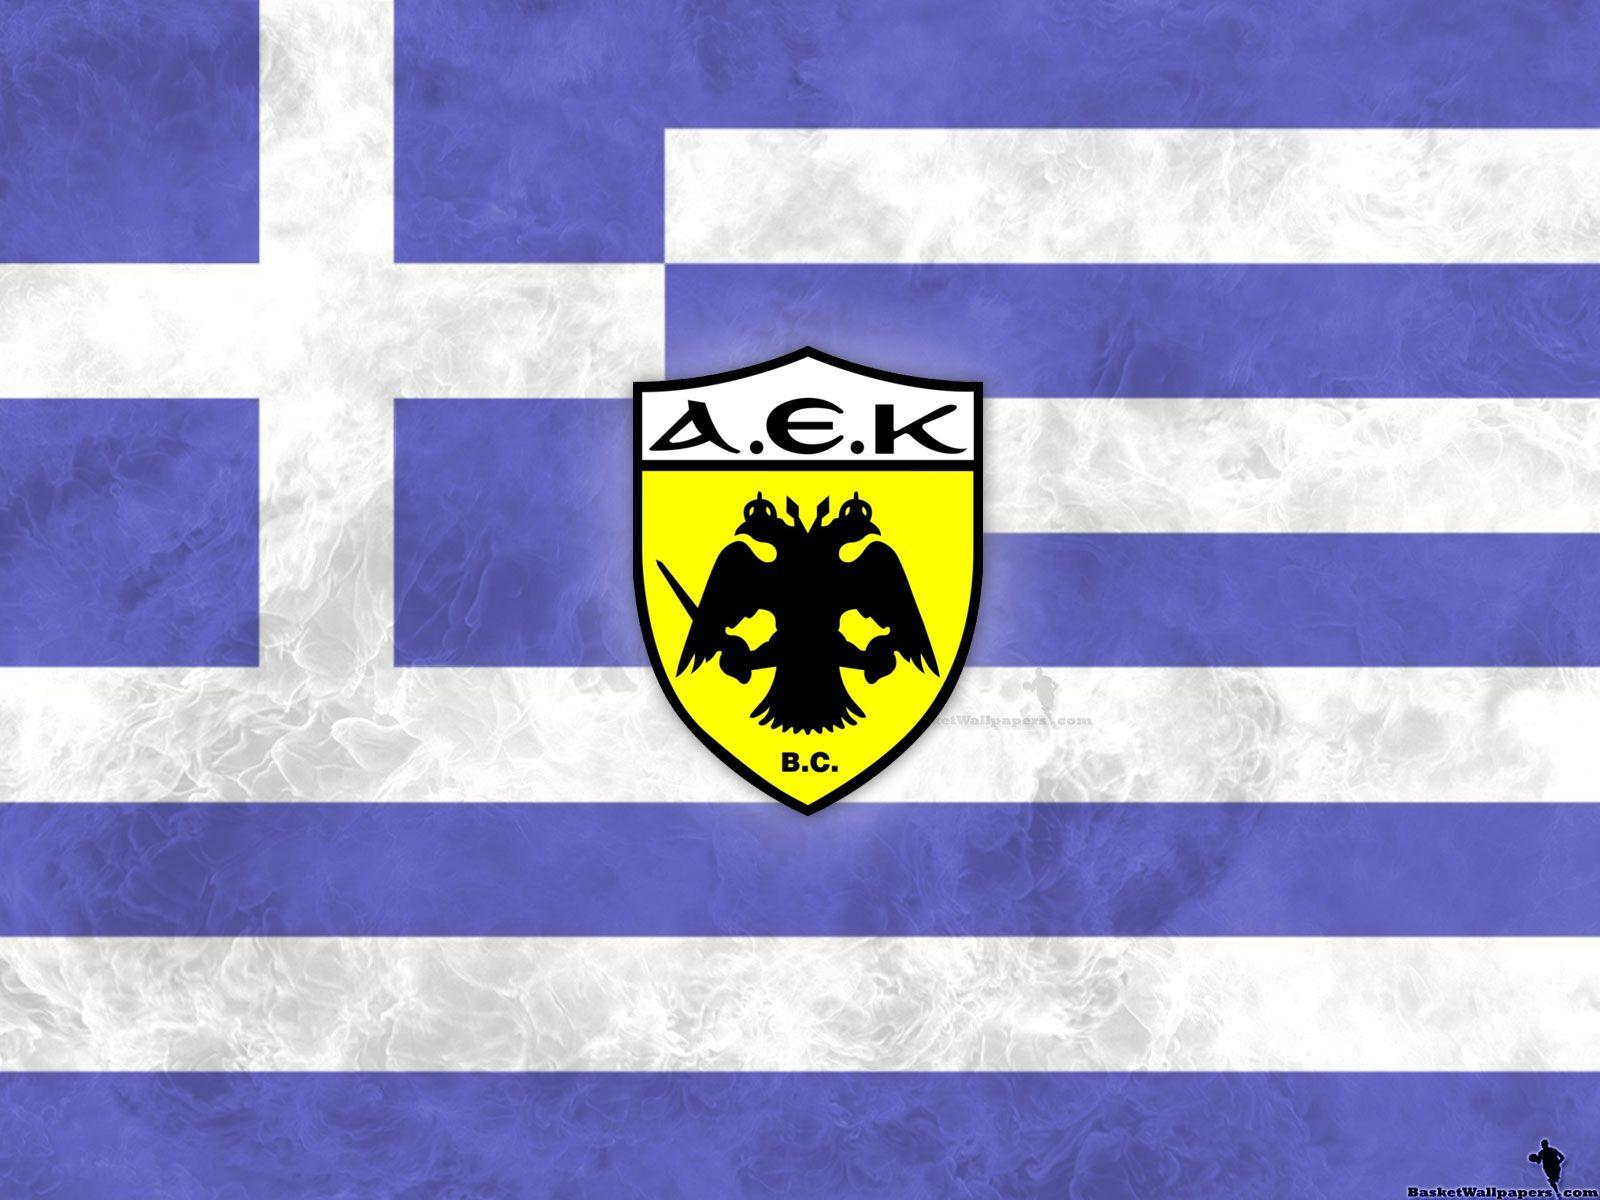 AEK Athens BC Wallpaper. Basketball Wallpaper at. Eλληνική ομάδα